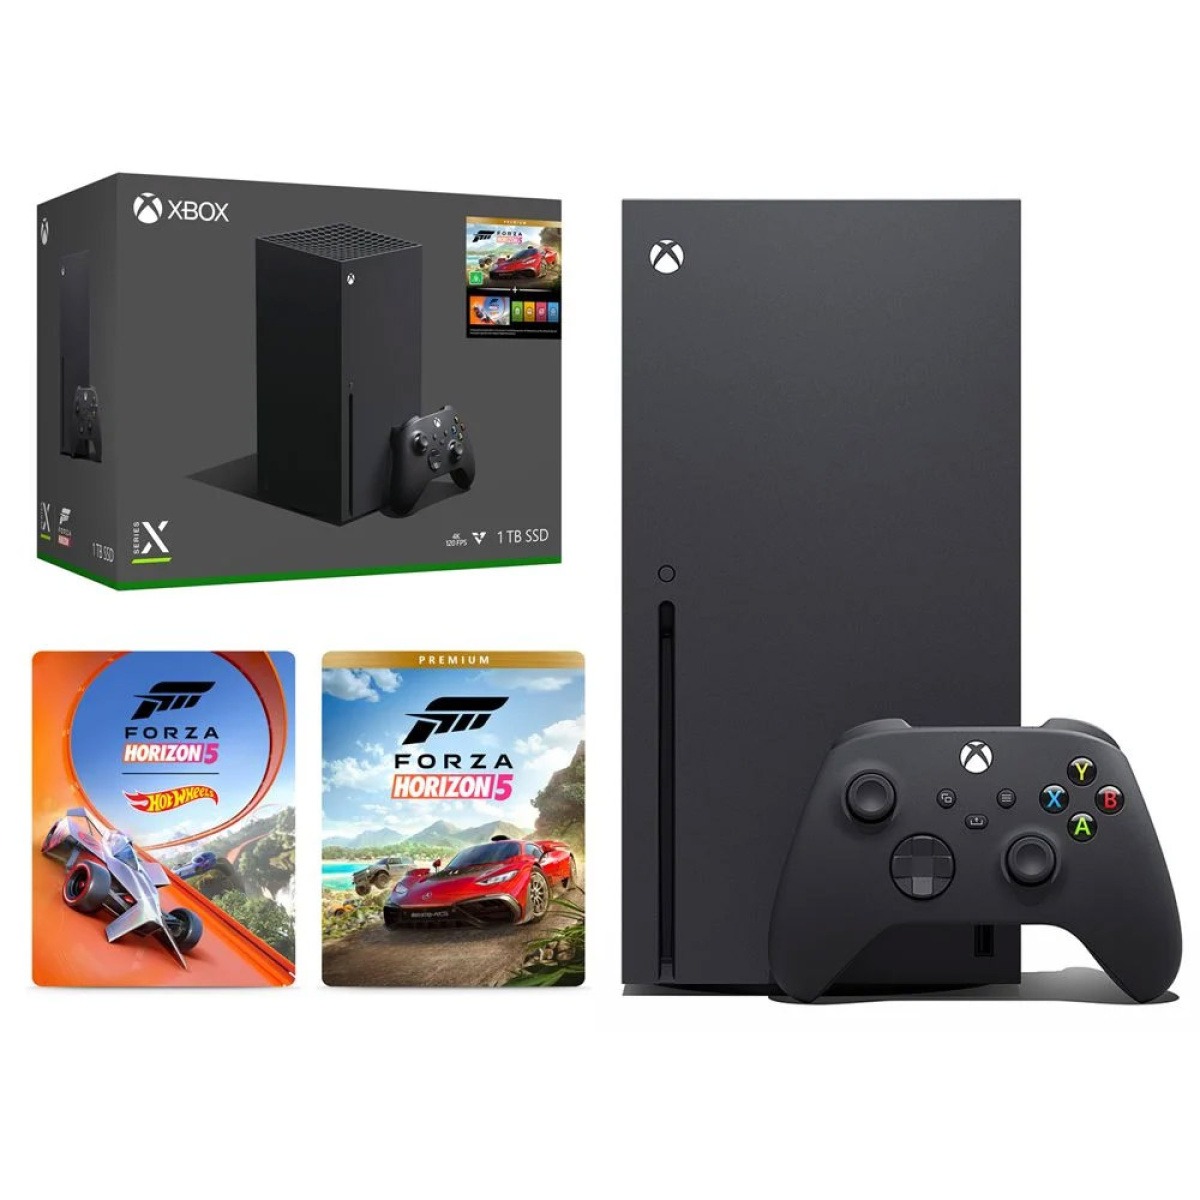 Xbox Series X Edição Premium de Forza Horizon 5